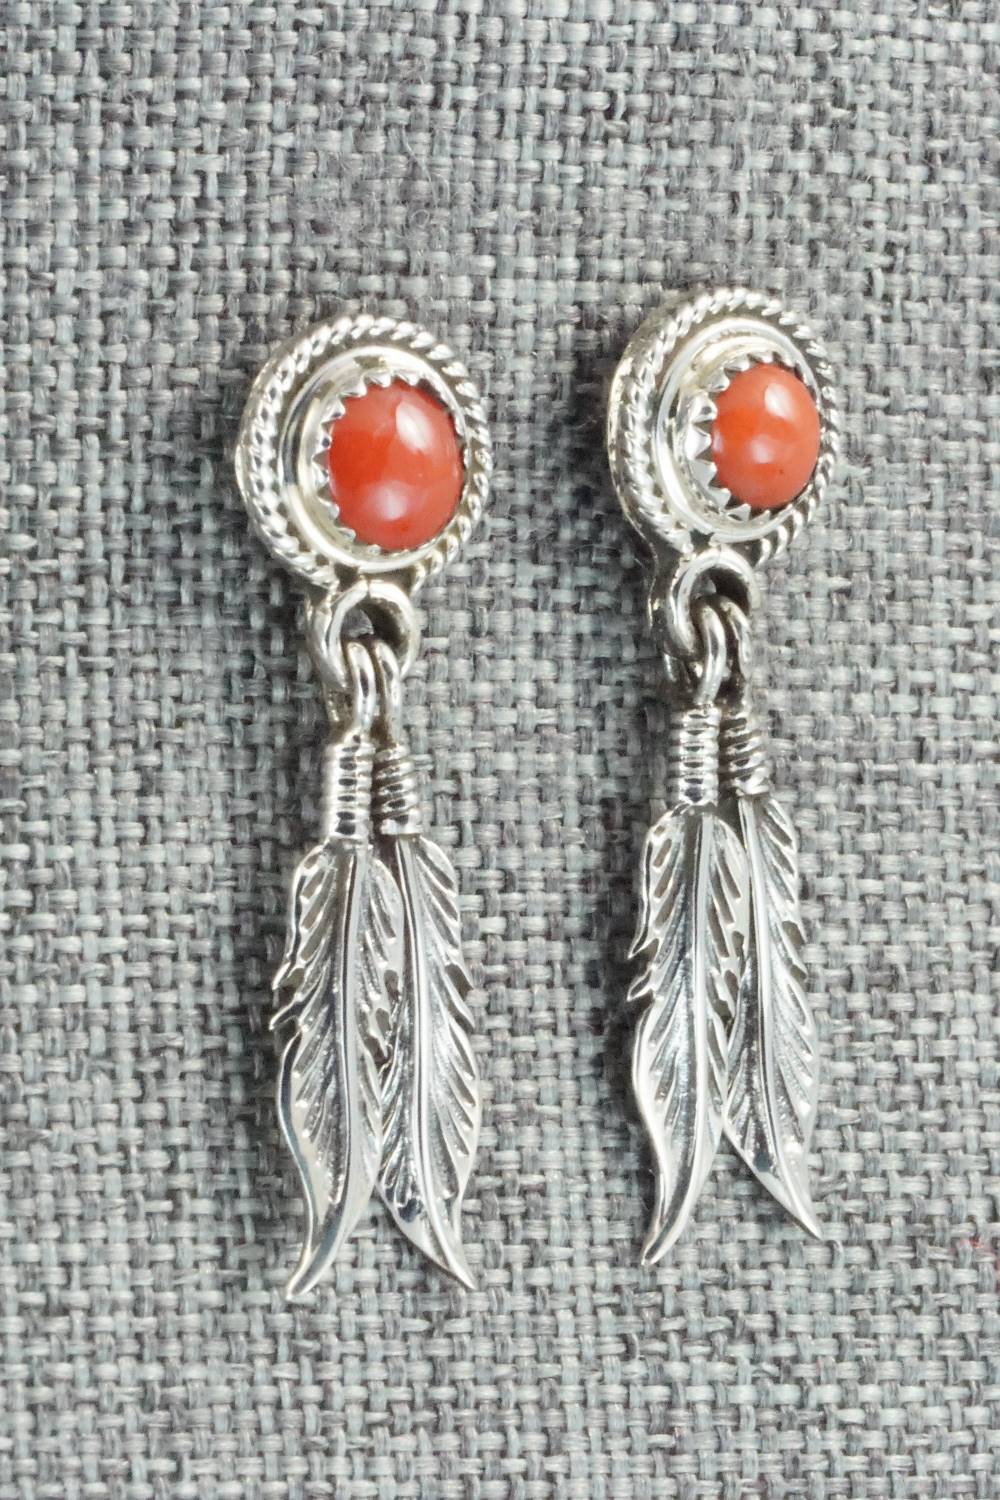 Coral and Sterling Silver Earrings - Sadie Jim